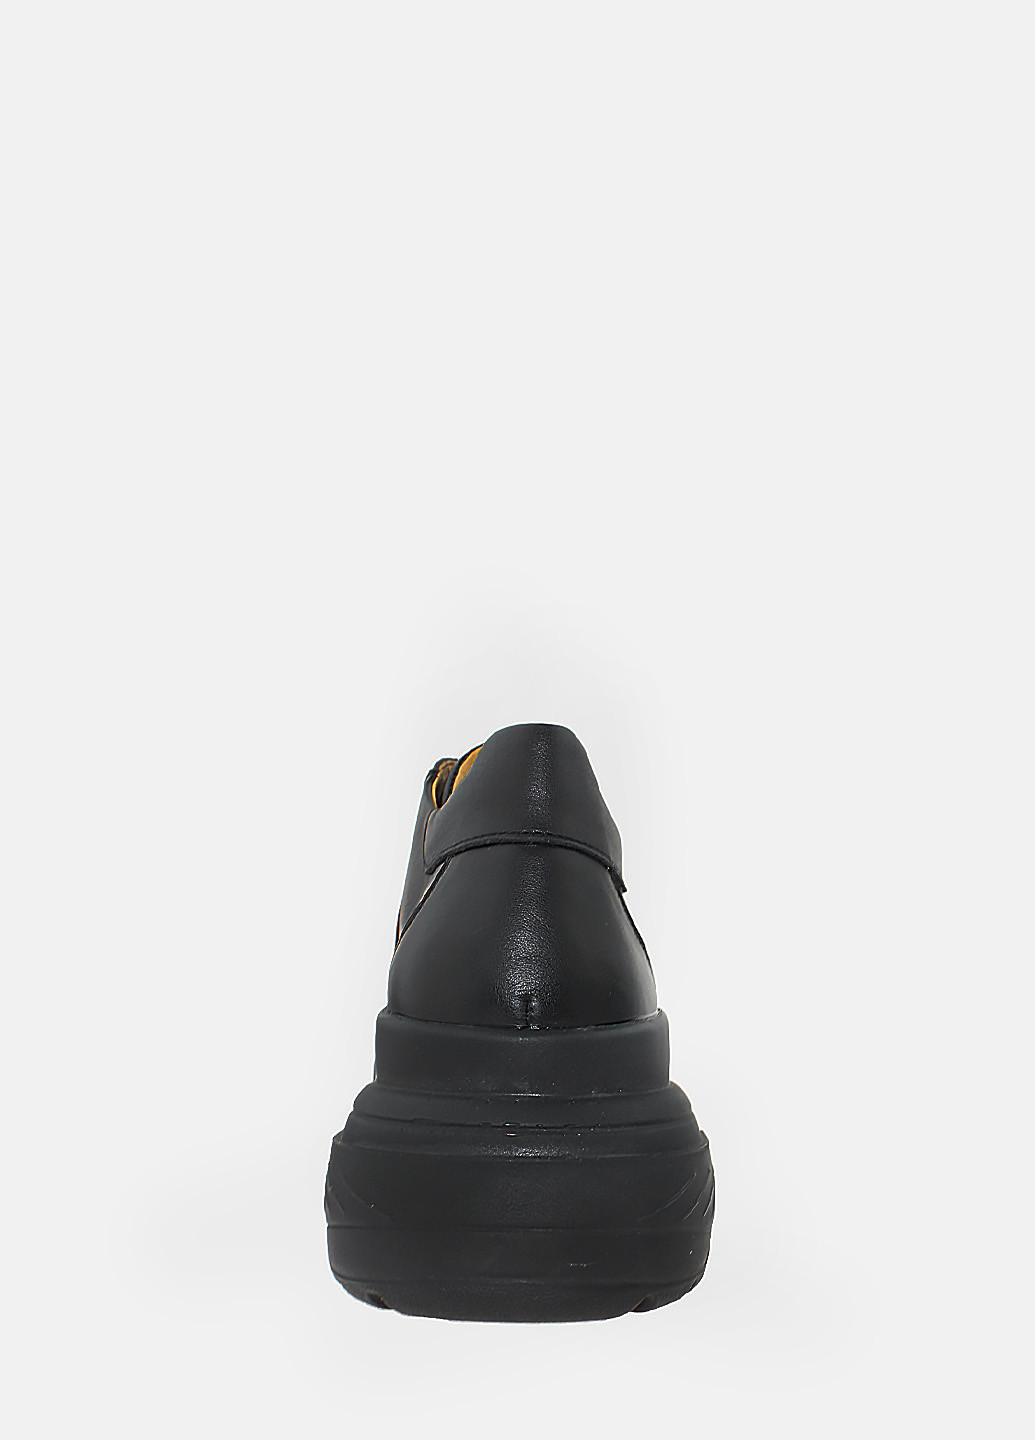 Осенние ботинки rhit001-1 черный Hitcher